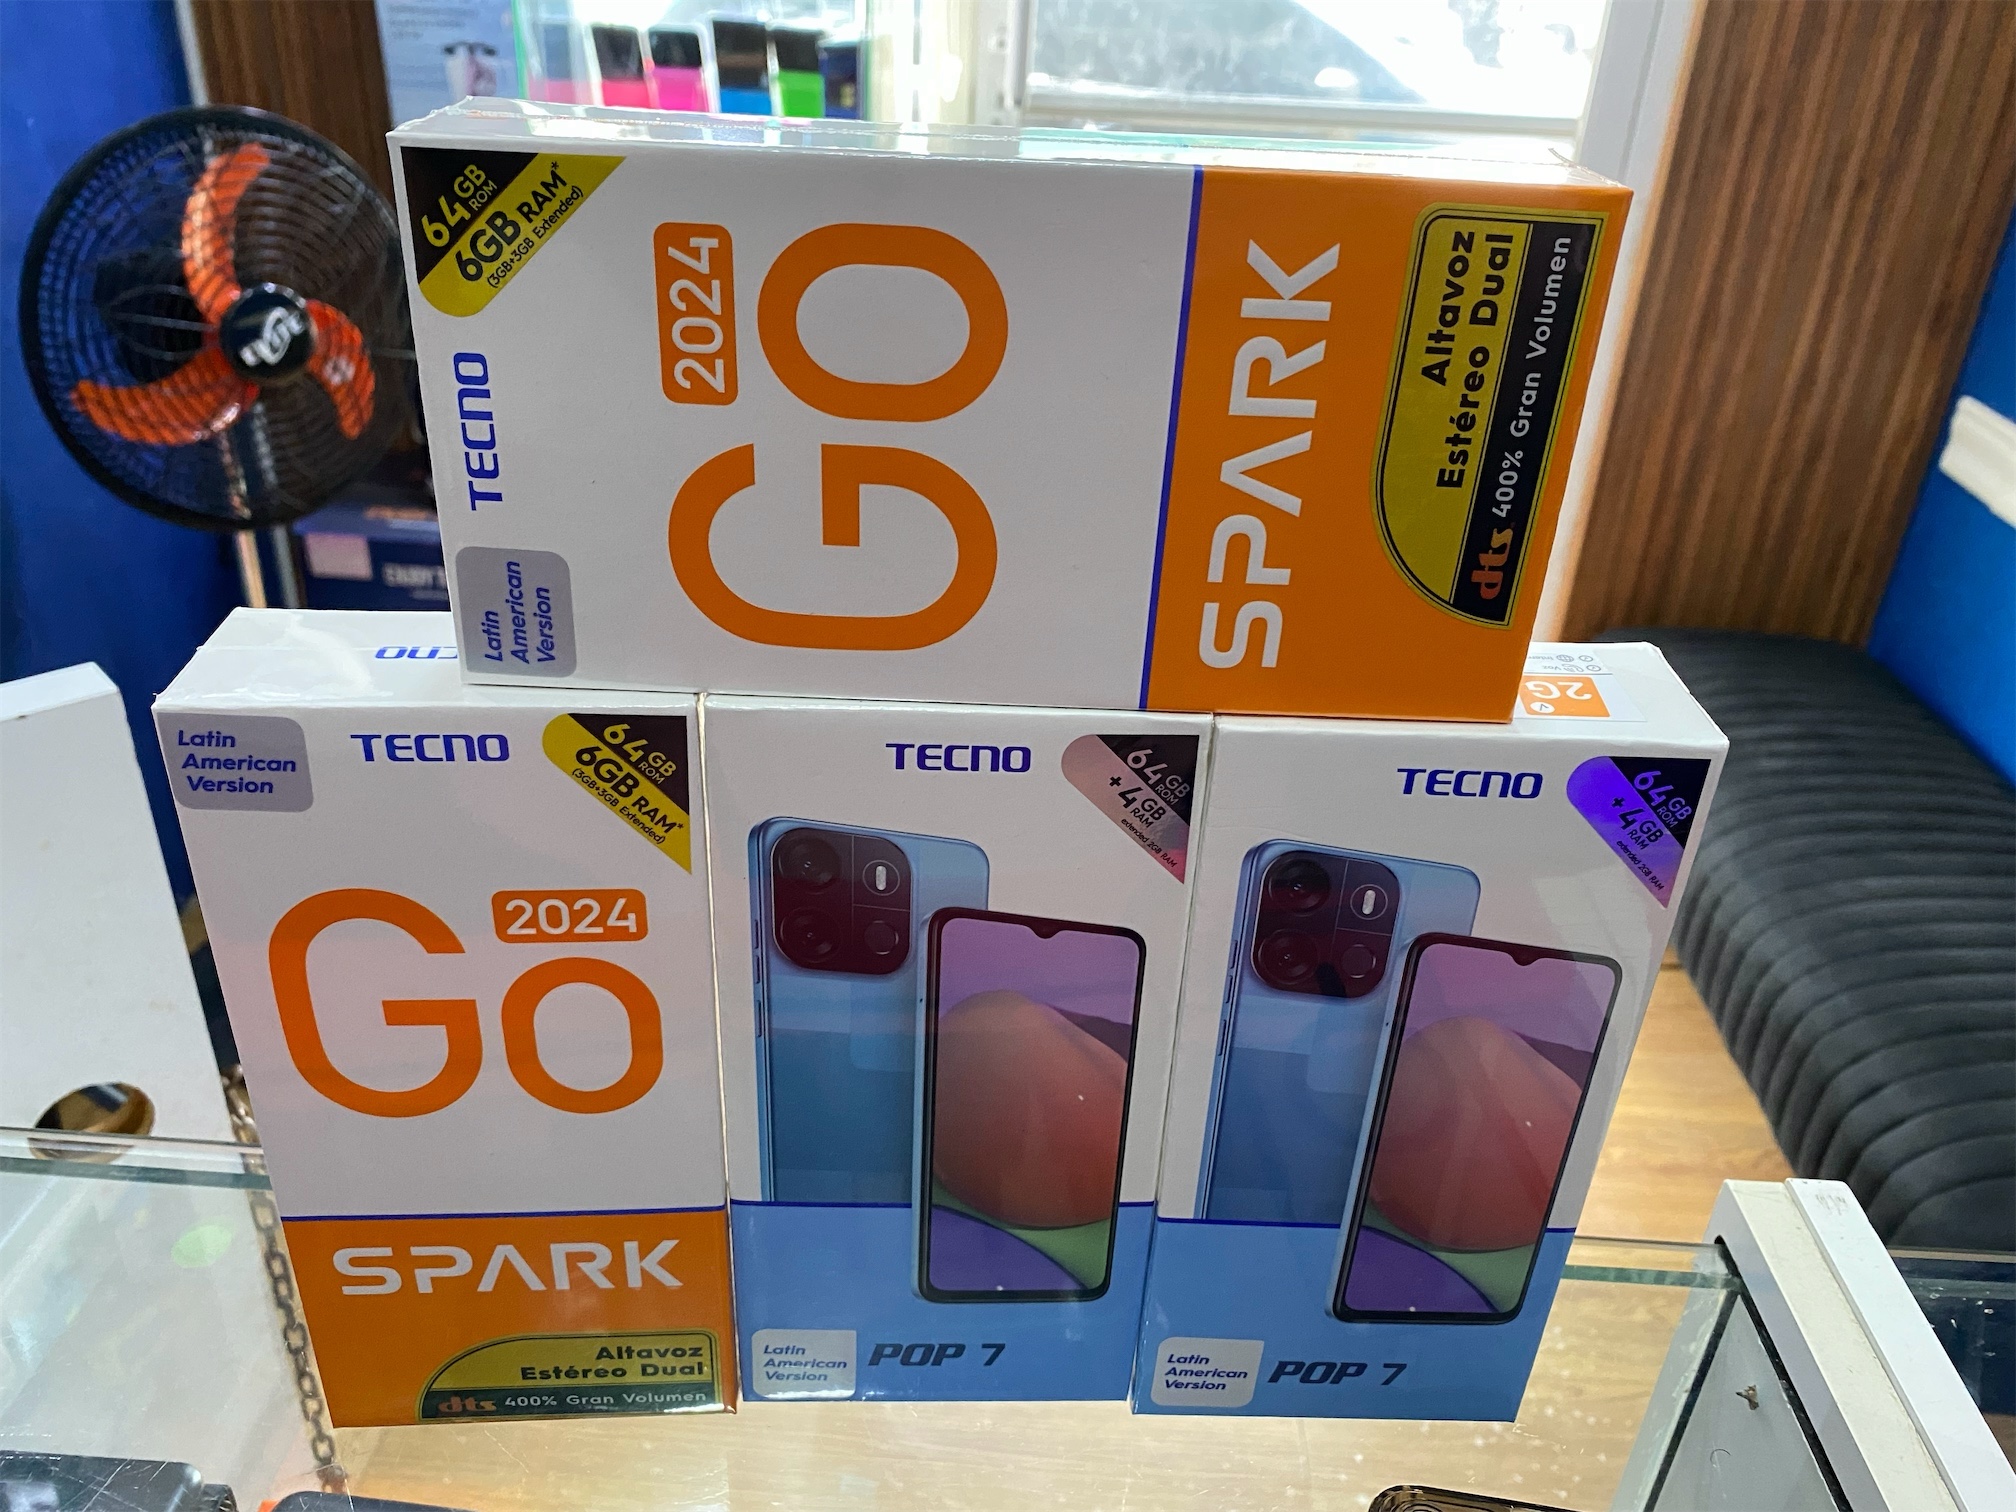 celulares y tabletas - Tecno pop 7 tecno goo spark 2024 64Gb  3